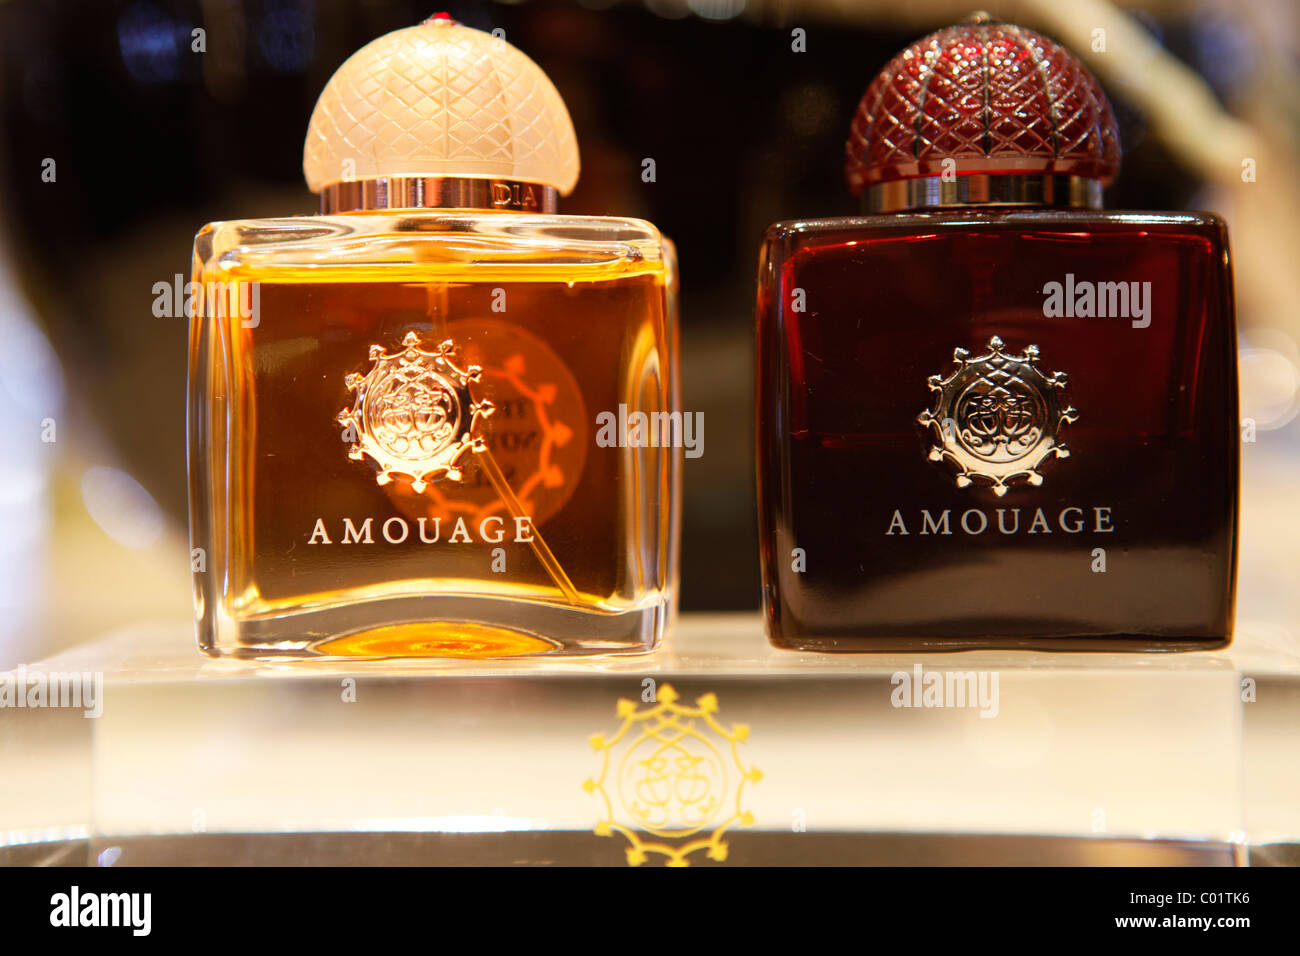 Amouage Parfum, des weltweit teuerste Parfüm Marke Stockfotografie - Alamy